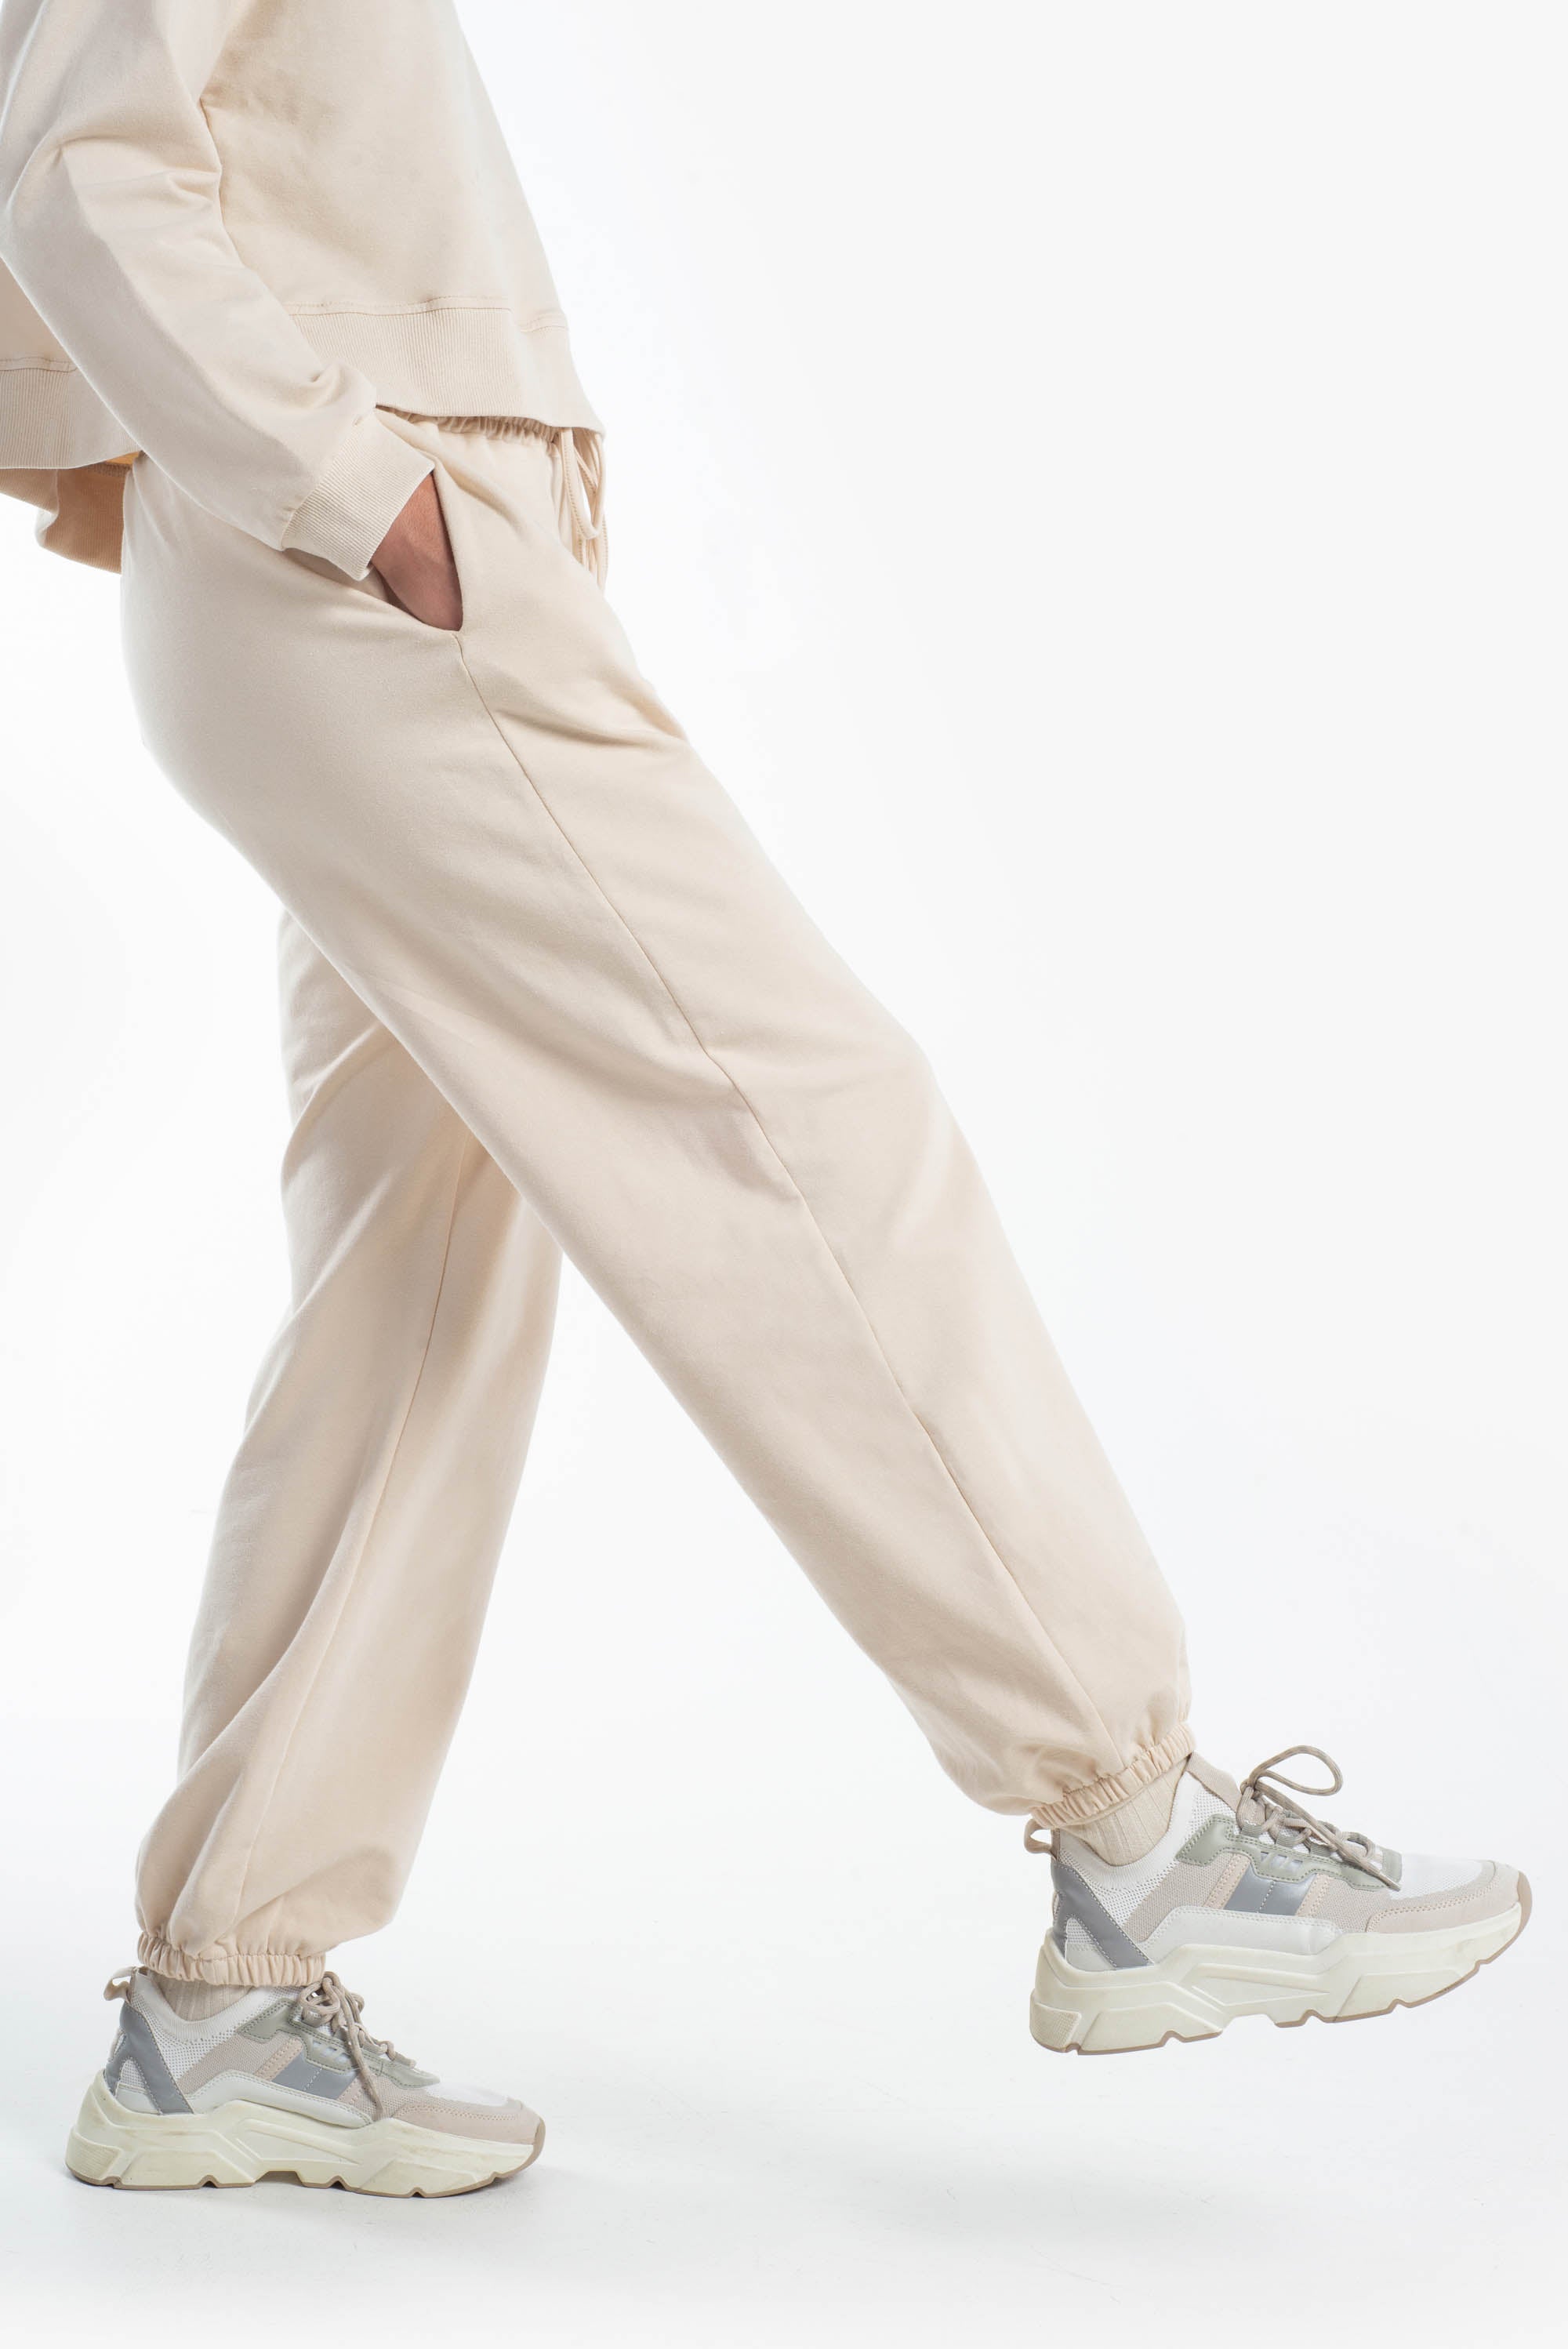 Pantalone comfy fit elastico